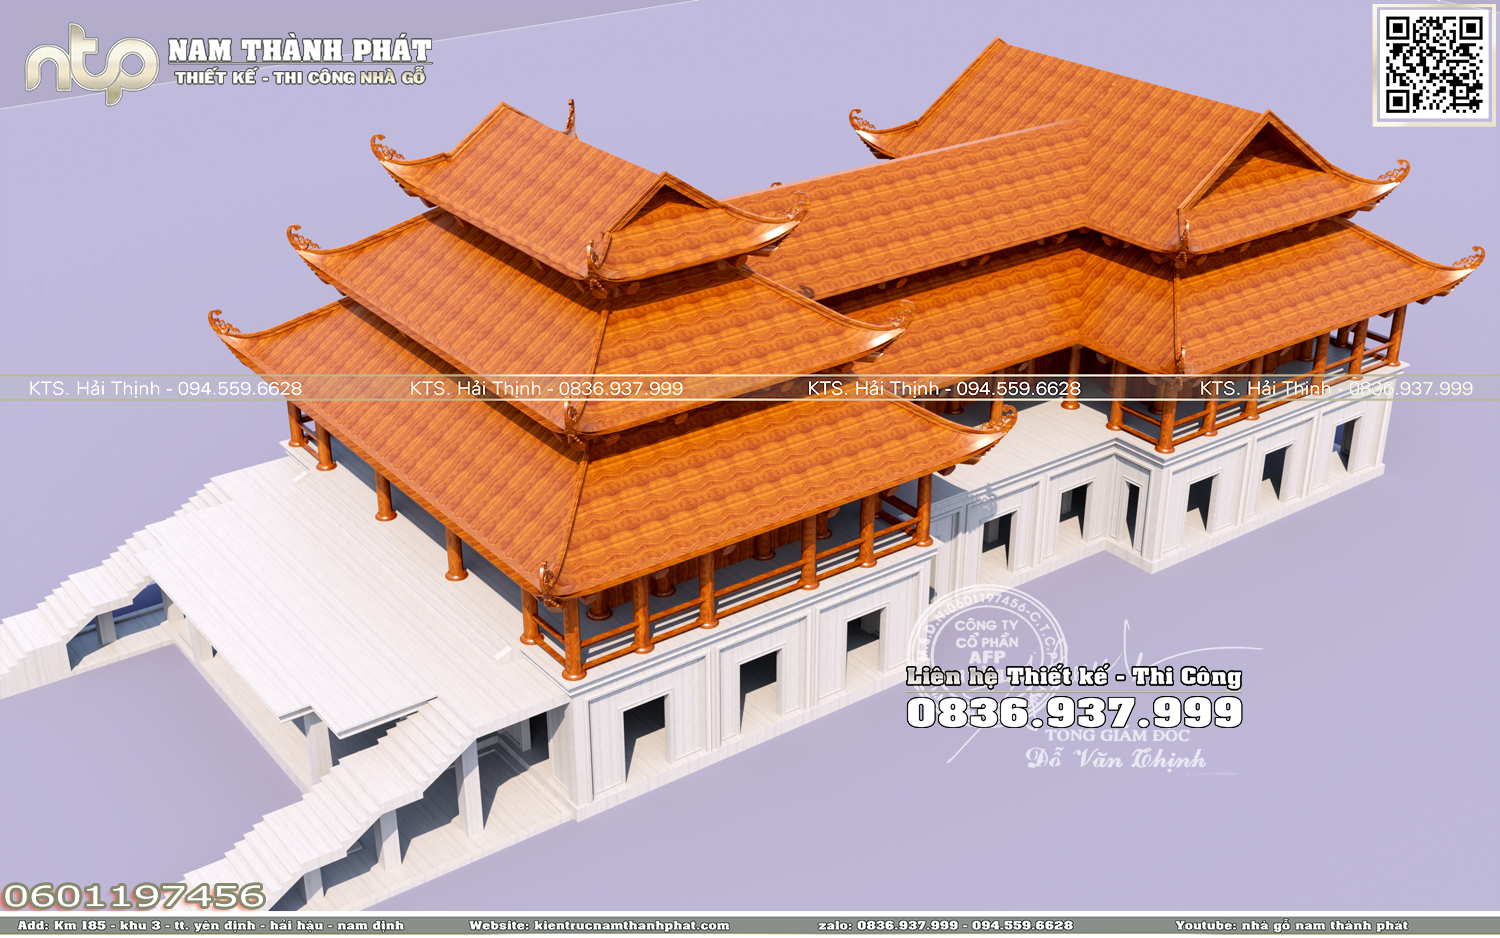 Dự án mô phỏng chùa Phổ Quang tại Sài Gòn